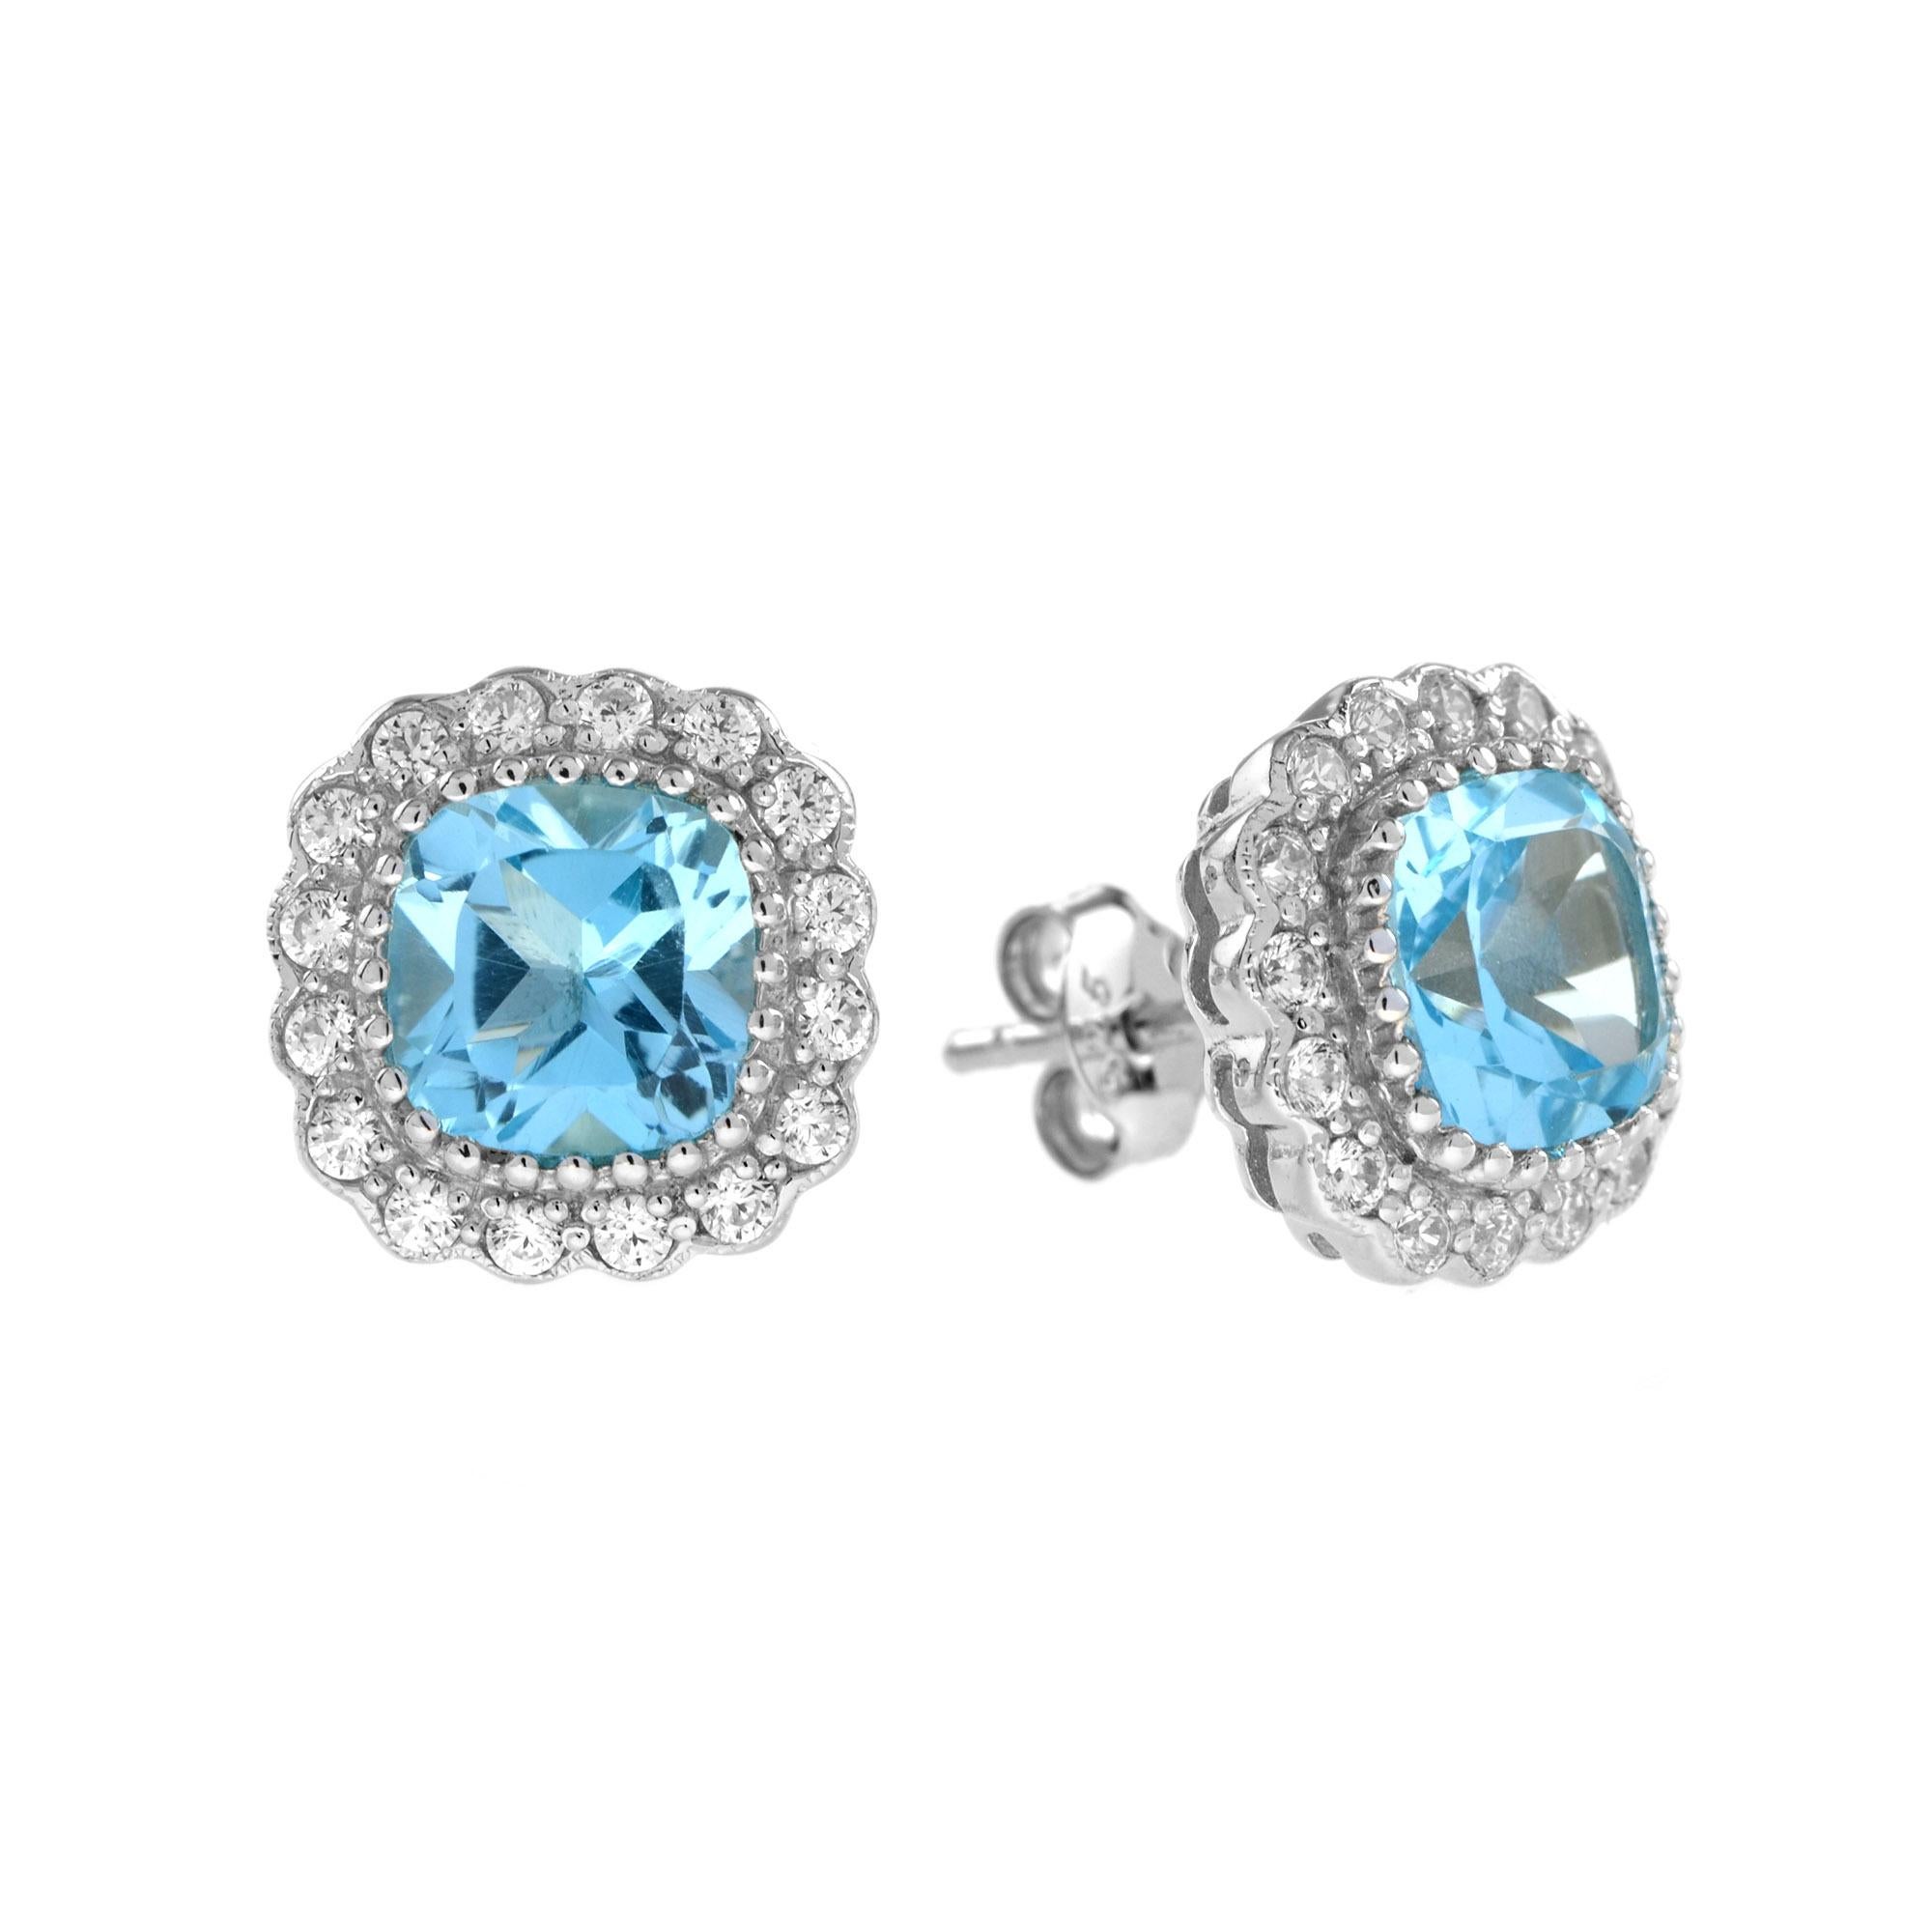 Ces magnifiques boucles d'oreilles et ce pendentif en or blanc 14k sont ornés d'une topaze bleue coussin de 5,70 carats.  entouré d'un halo de diamants. Une mise à jour sans effort de votre garde-robe d'accessoires. Portez-les ensemble pour un look